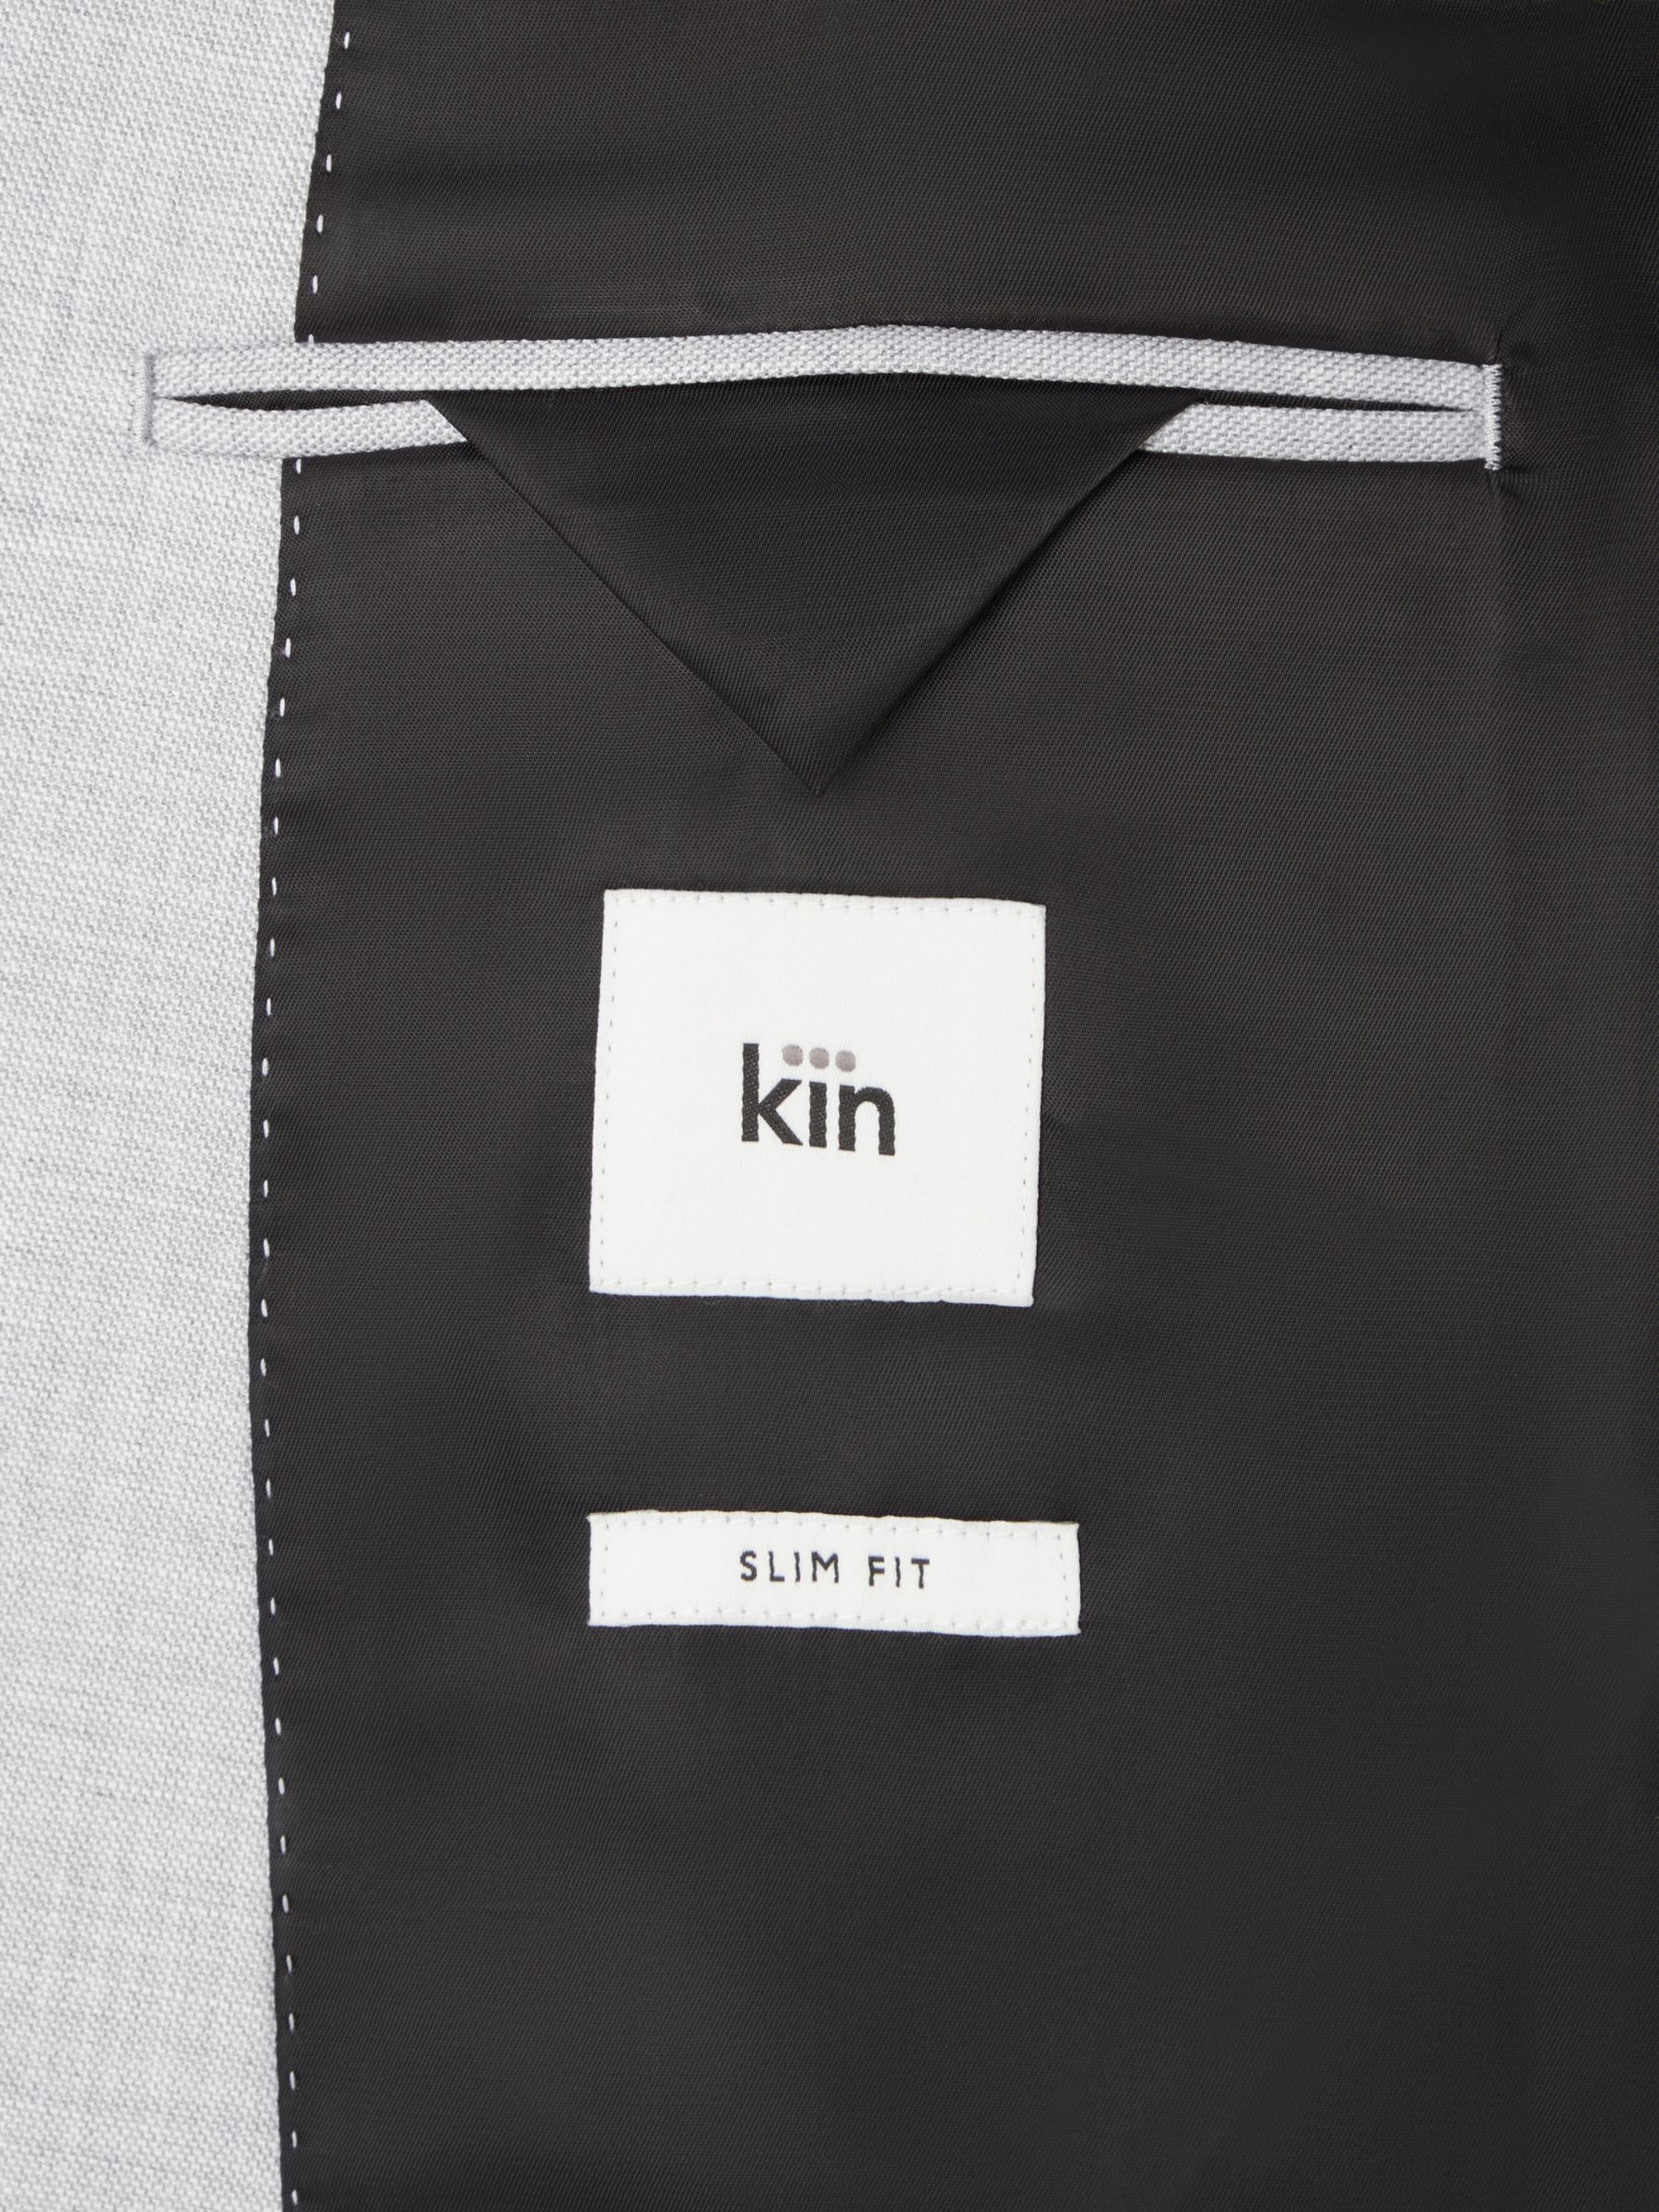 Kin Kai Slim Fit Blazer, Light Grey, 46R